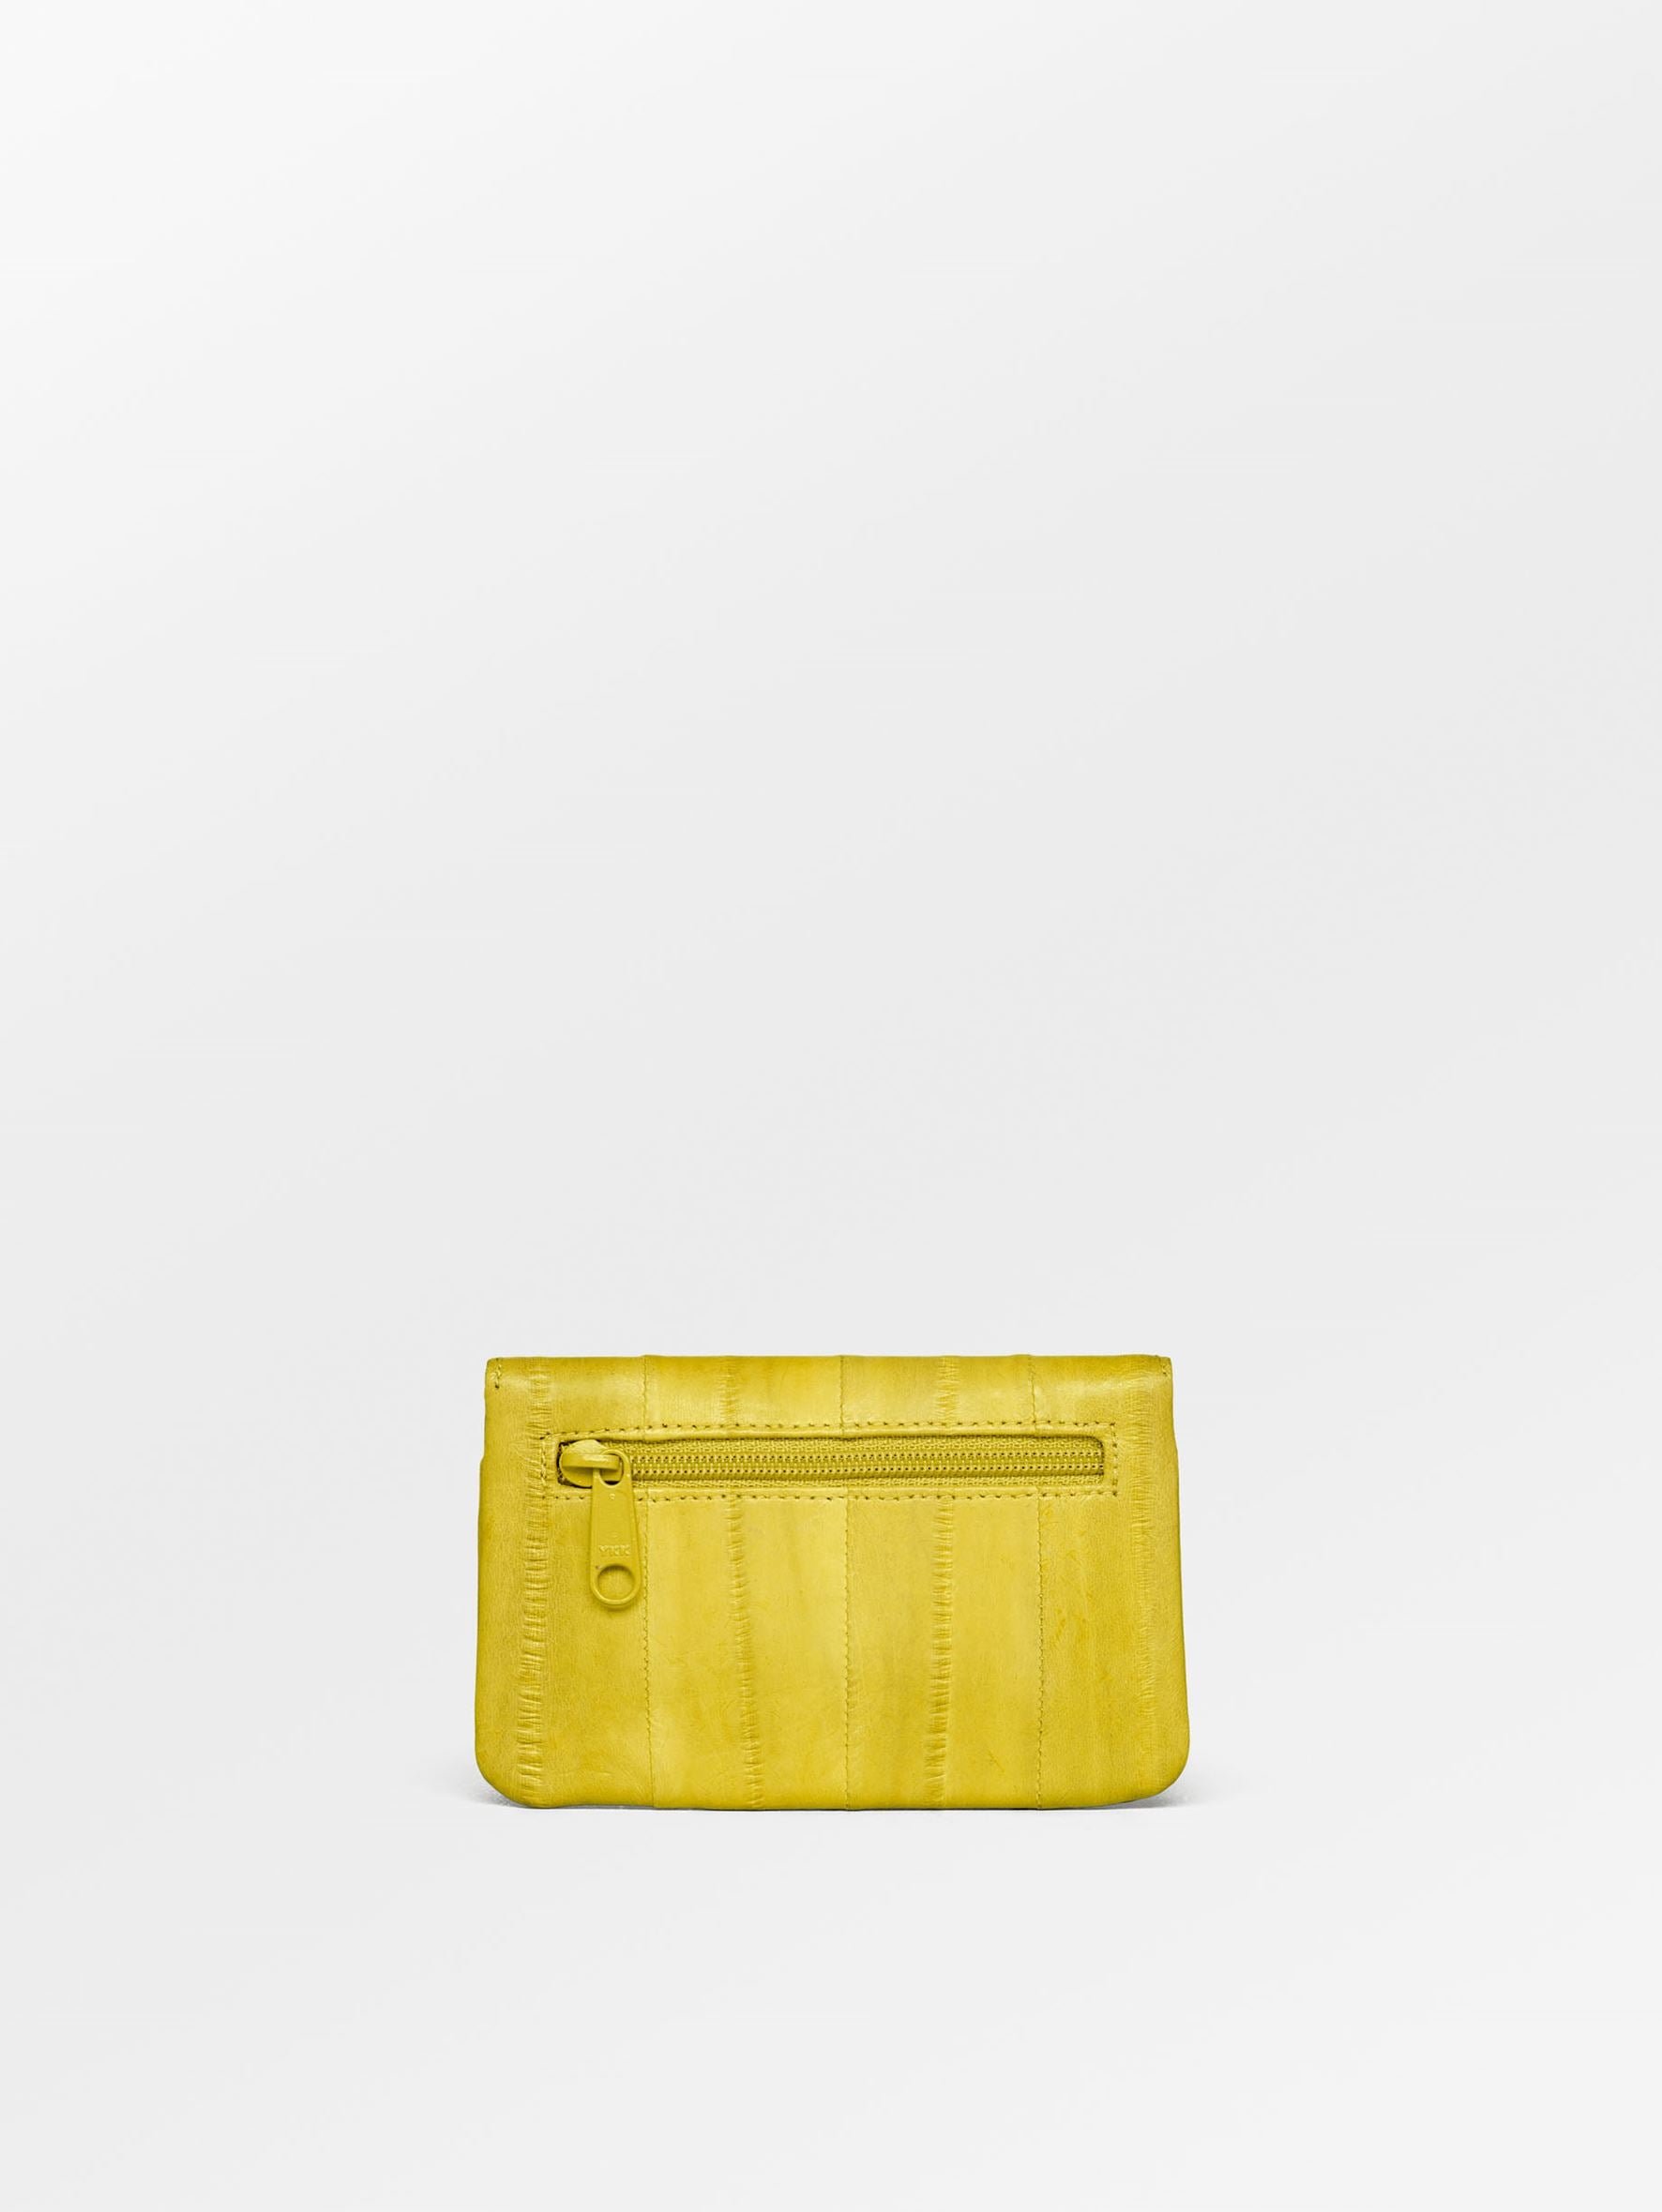 Becksöndergaard, Handy Purse - Yellow, accessories, sale, sale